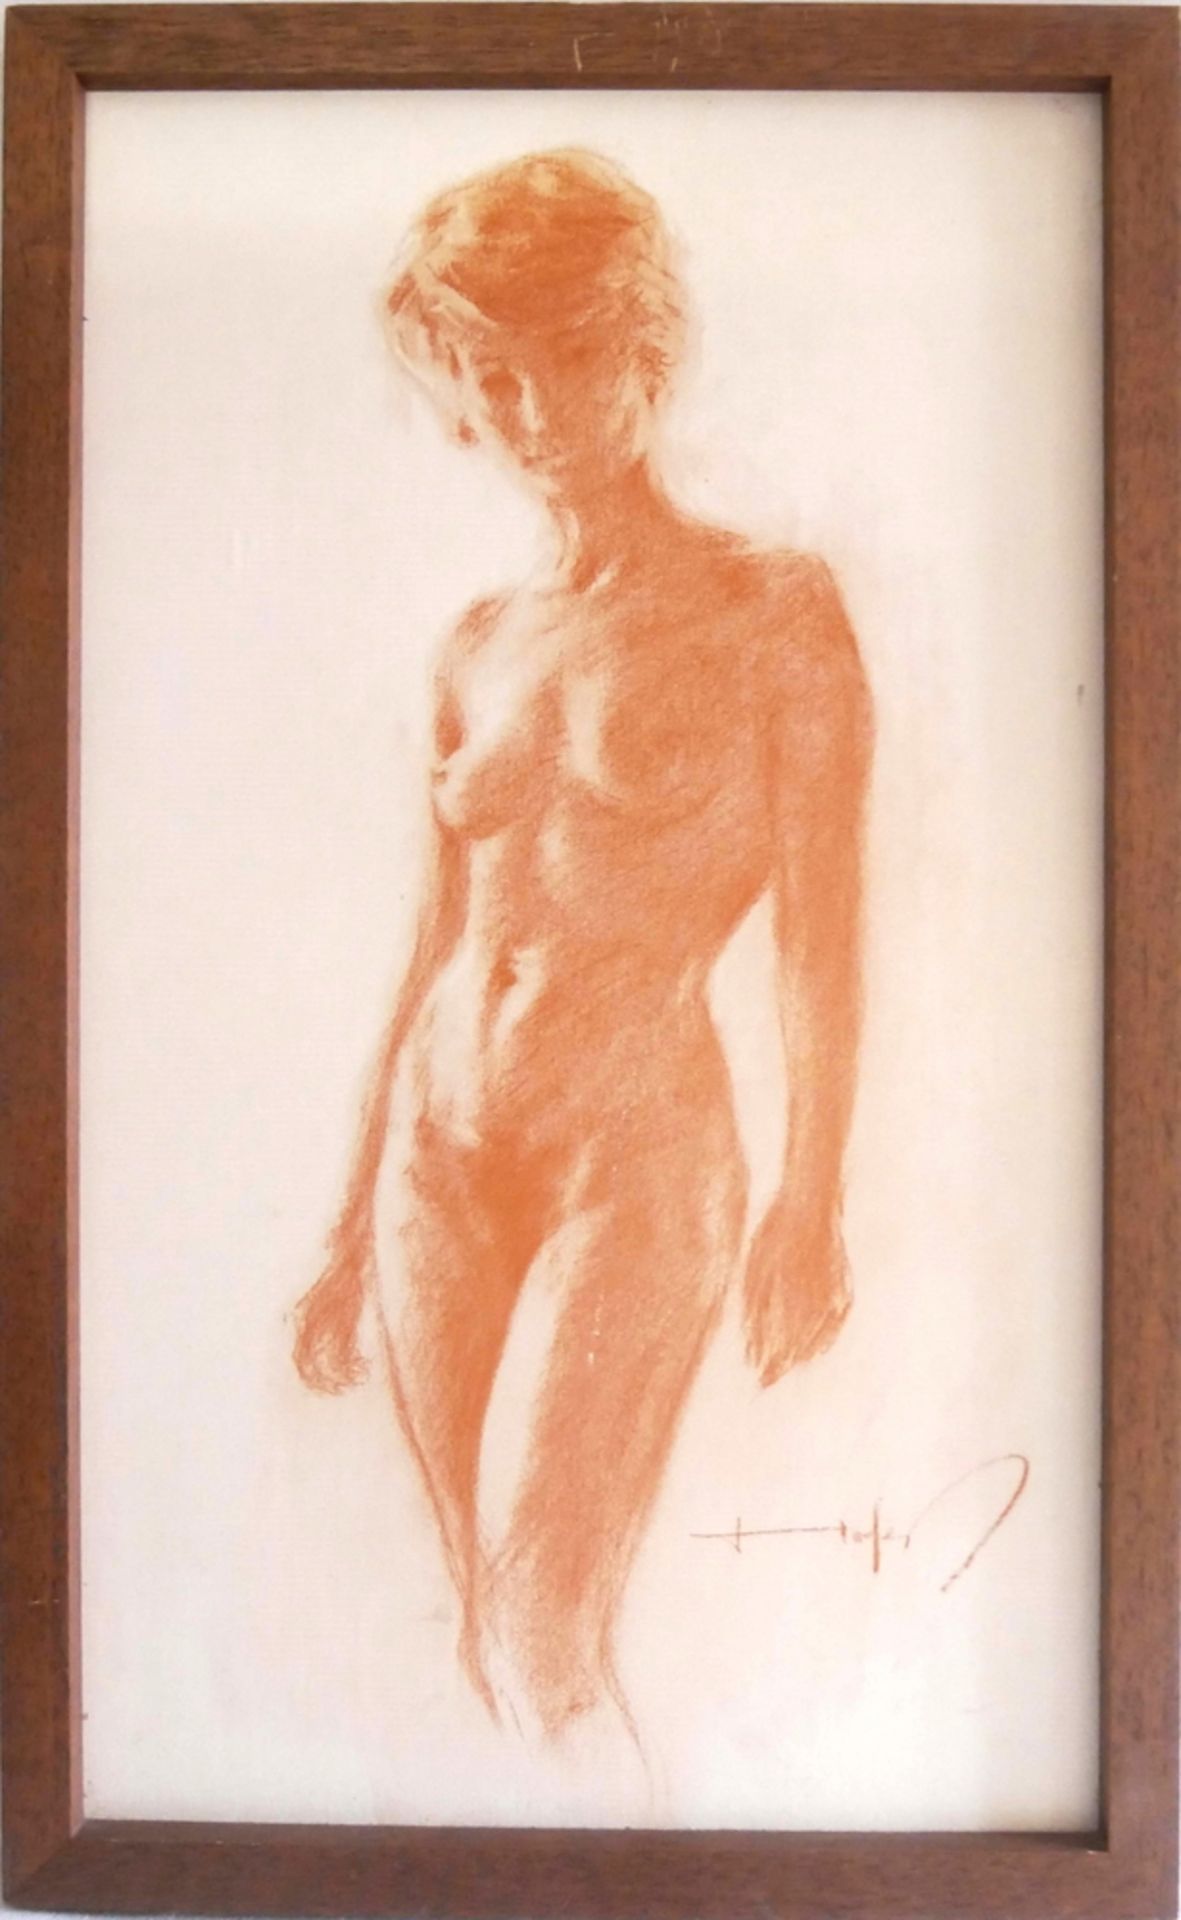 Zeichnung Rötel "Damen Akt" rechts unten Signatur Hofer. Maße: Höhe ca. 52,5 cm, Breite ca. 32 cm